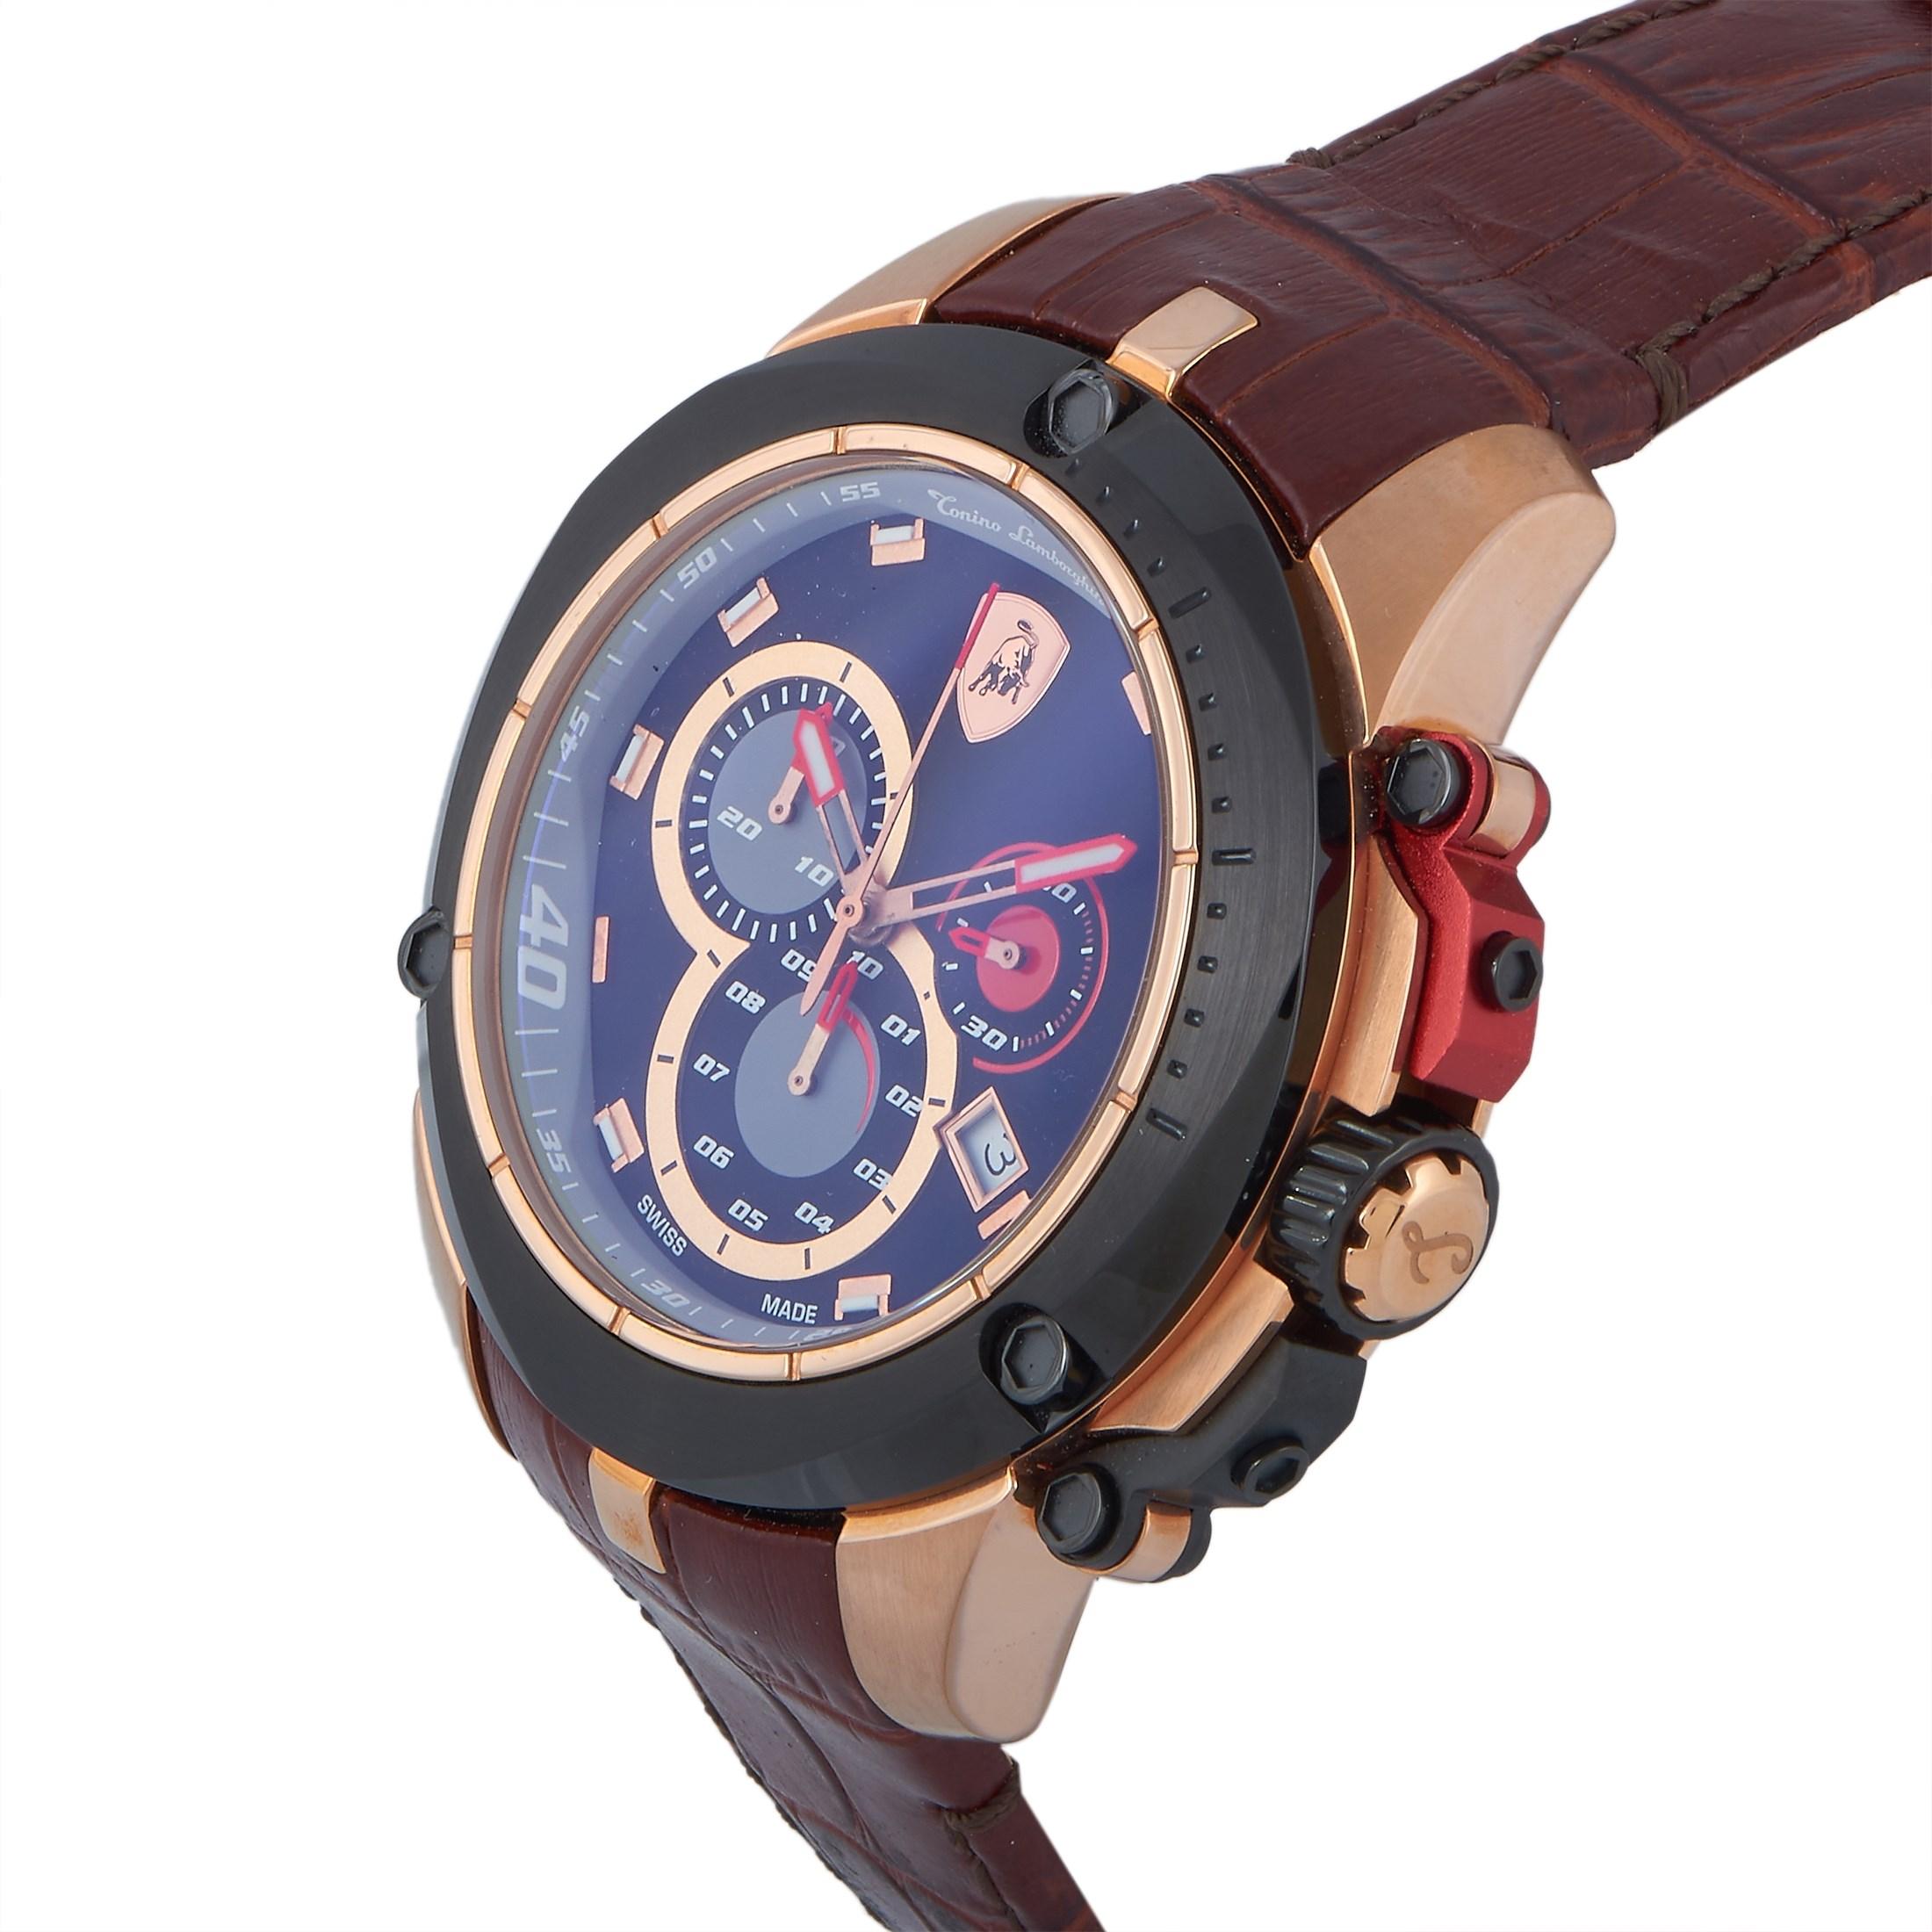 La montre Chronographe Steele Series, référence SW7802, est dotée d'un boîtier en acier inoxydable plaqué or rose et d'une lunette en acier inoxydable plaqué noir. Le boîtier mesure 45 mm de diamètre et est étanche à 100 mètres. Elle est montée sur